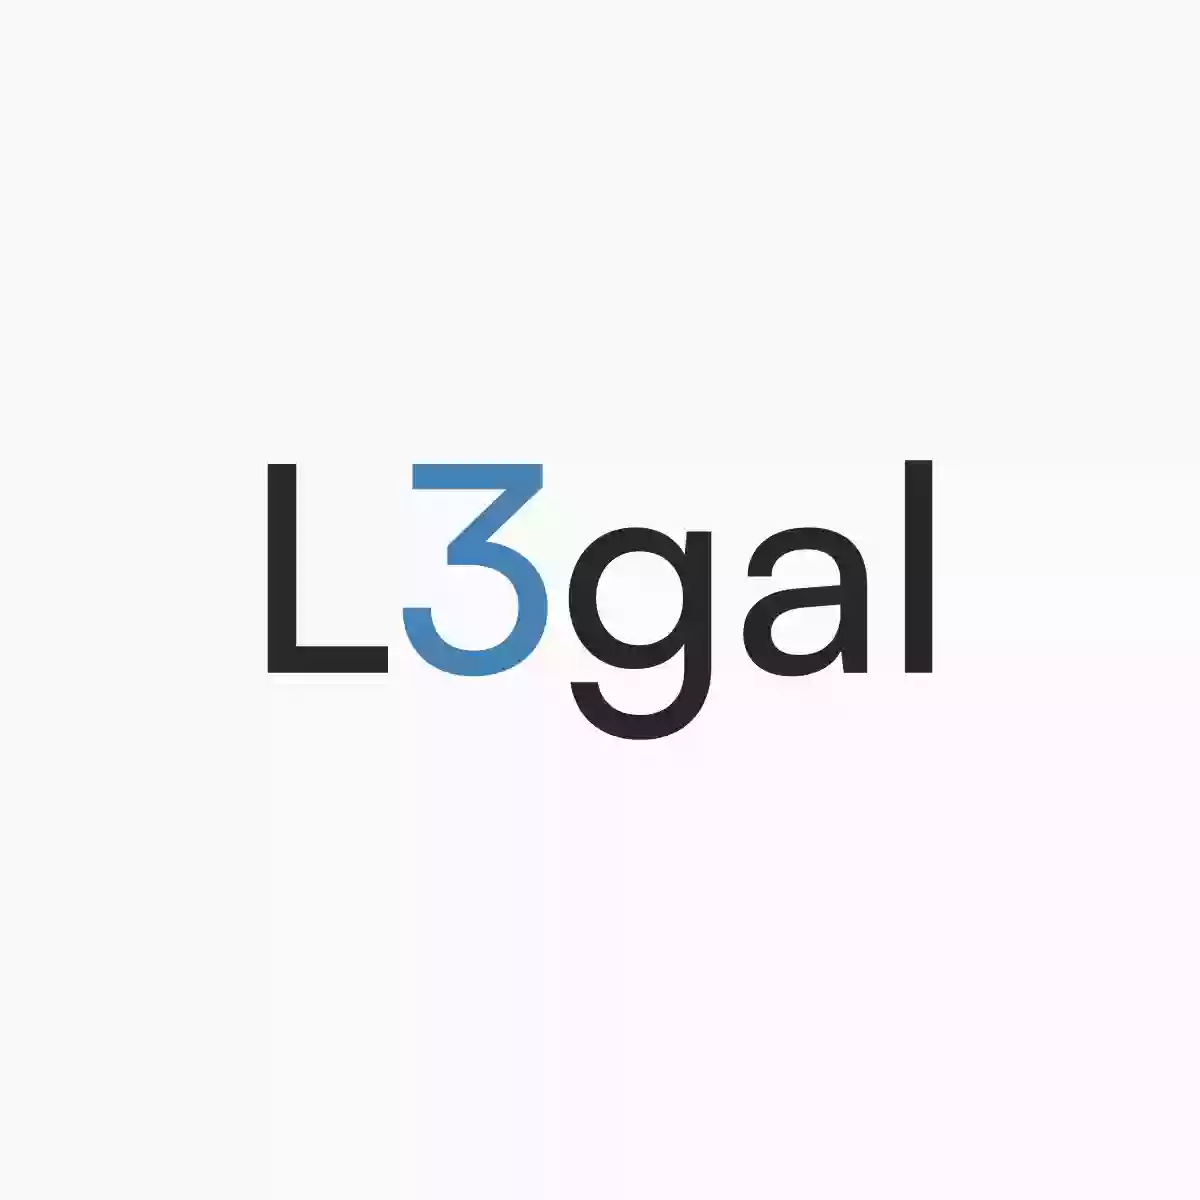 L3gal - firma prawnicza